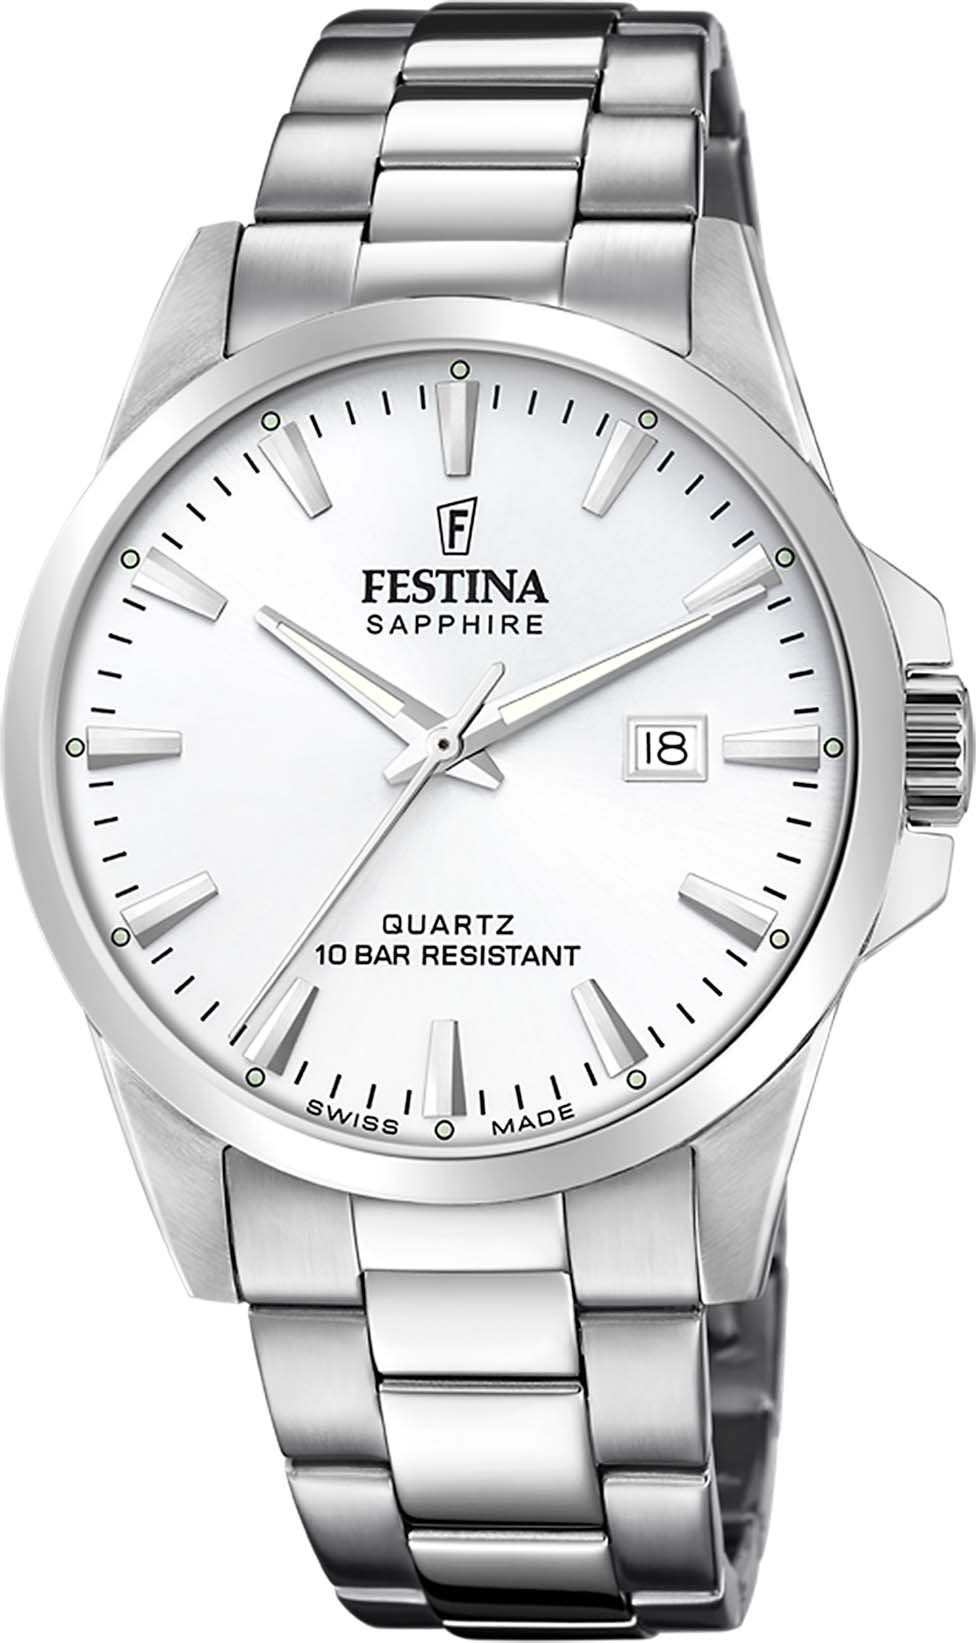 Festina Schweizer Uhr Swiss Made, F20024/2 | Schweizer Uhren